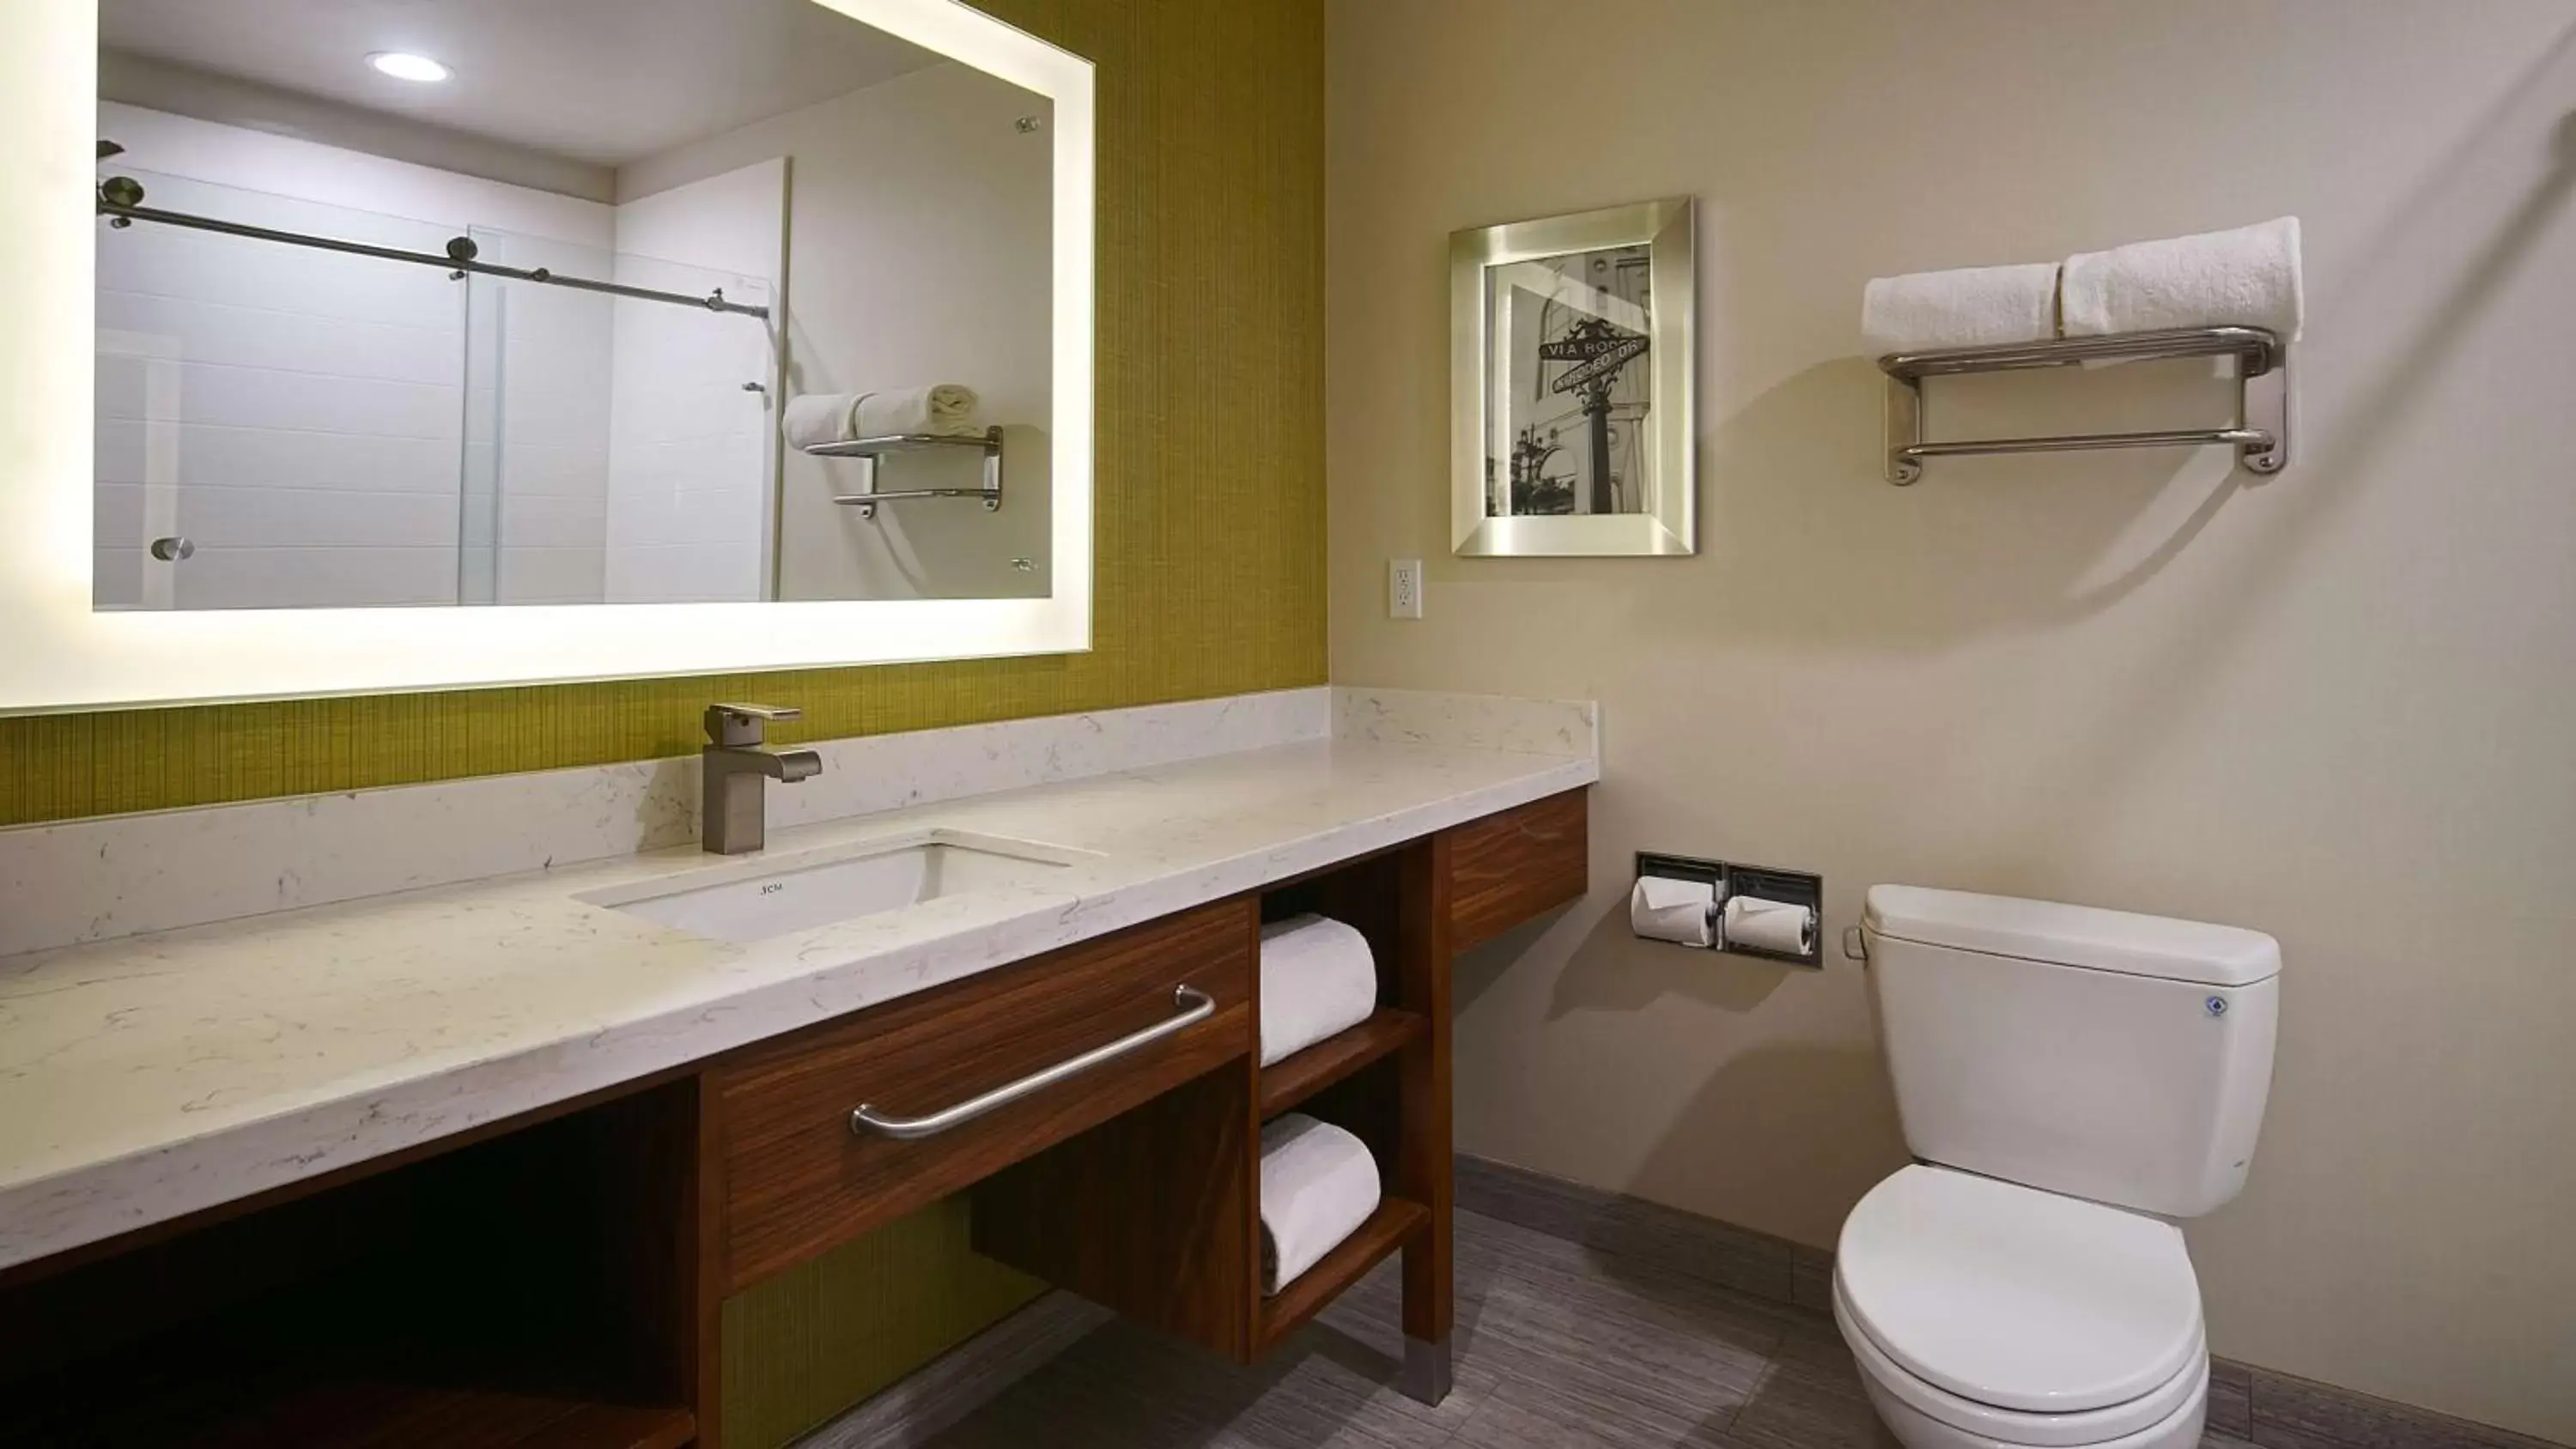 Photo of the whole room, Bathroom in Best Western Plus Gardena-Los Angeles Inn & Suites